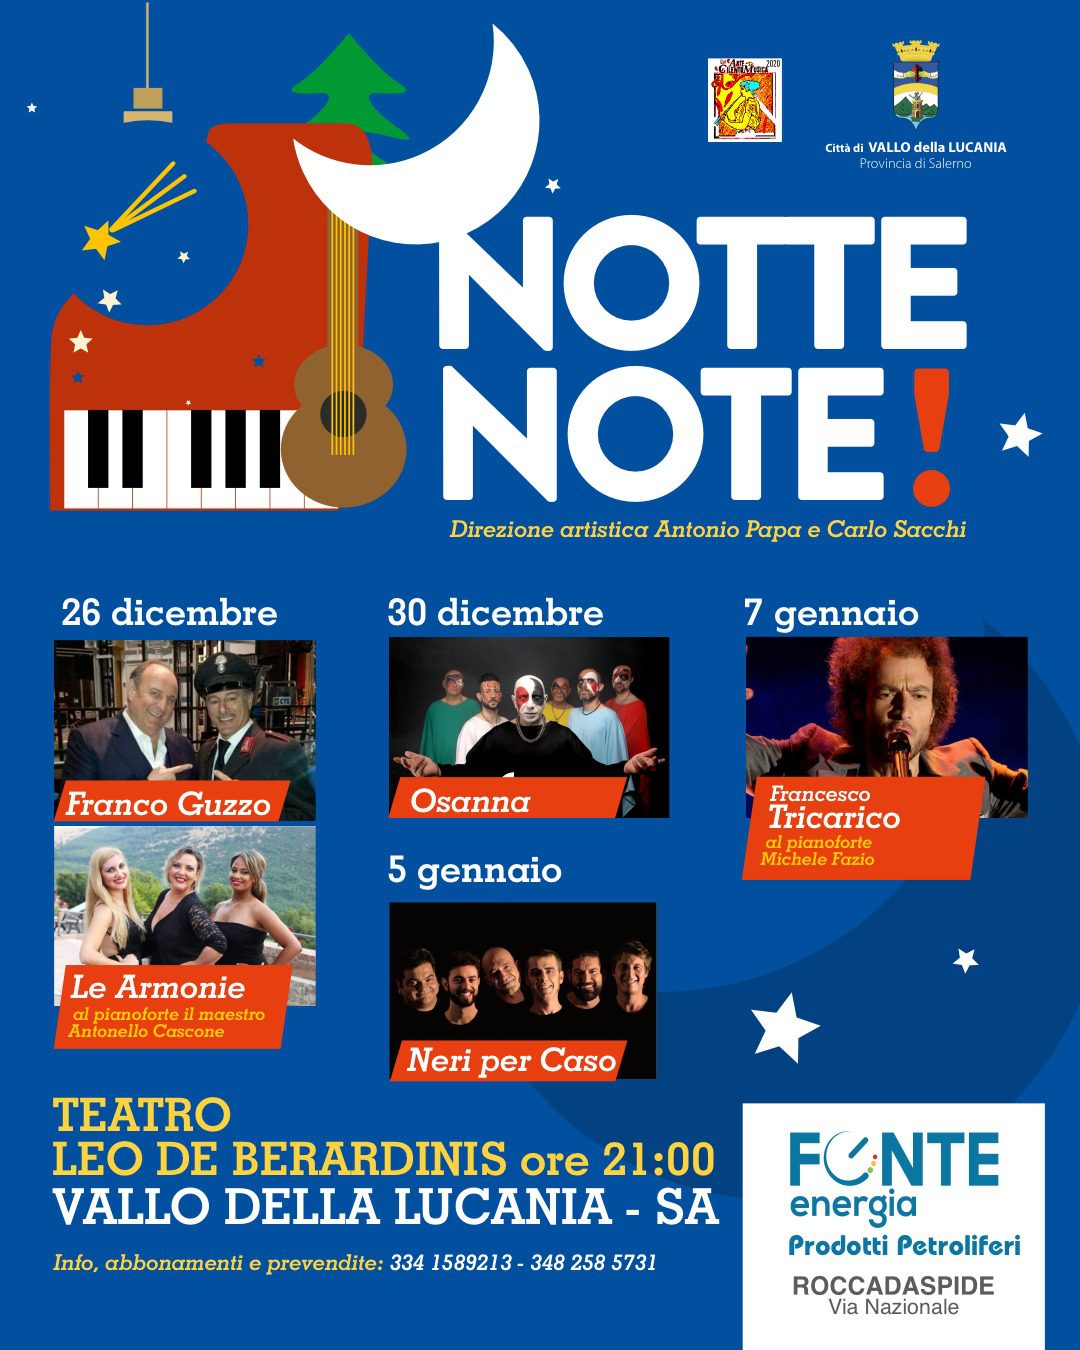 Musica e comicità al De Berardinis di Vallo della Lucania con la rassegna “Notte Note”